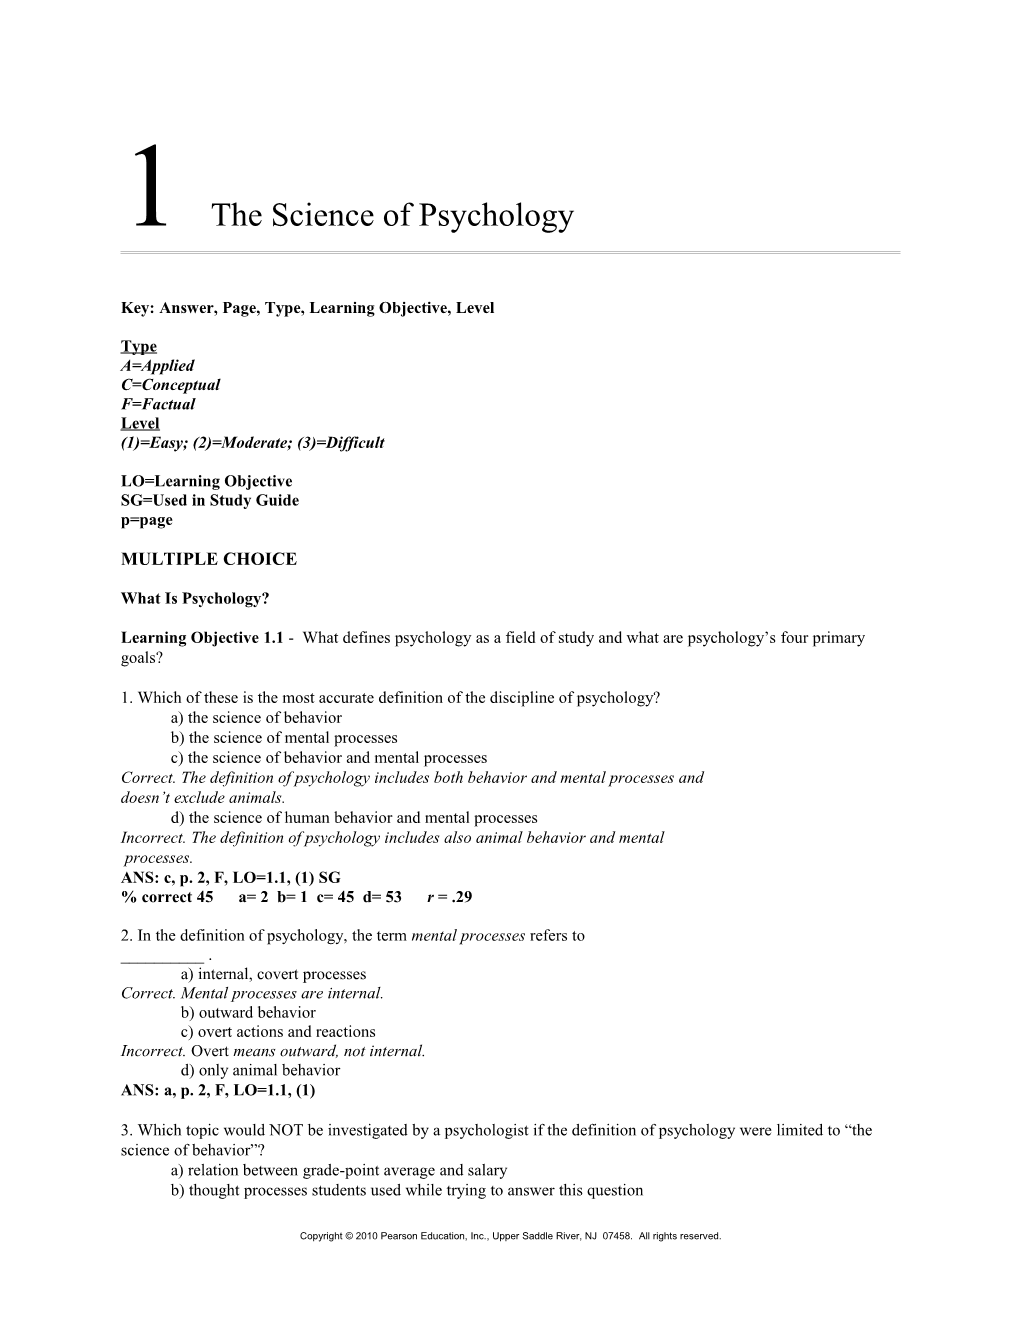 Psychology, by Saundra K s1